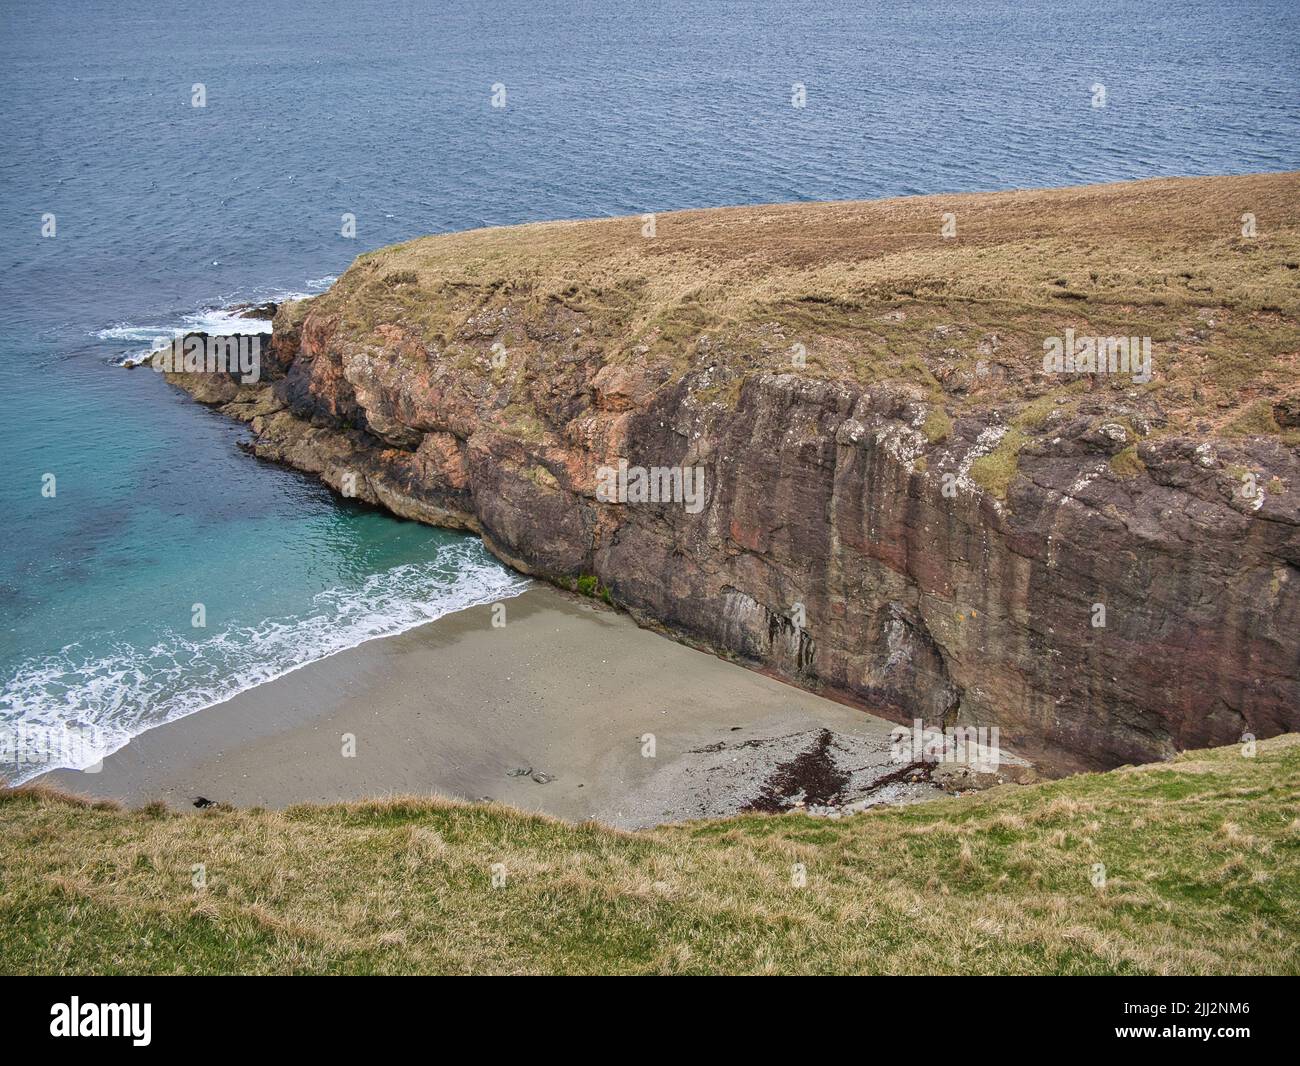 The Walls Boundary Fault, in der Nähe von Ollaberry, Shetland, Großbritannien - Teil des Great Glen Strike-Slip Fault, der durch den Norden des Vereinigten Königreichs verläuft. Stockfoto